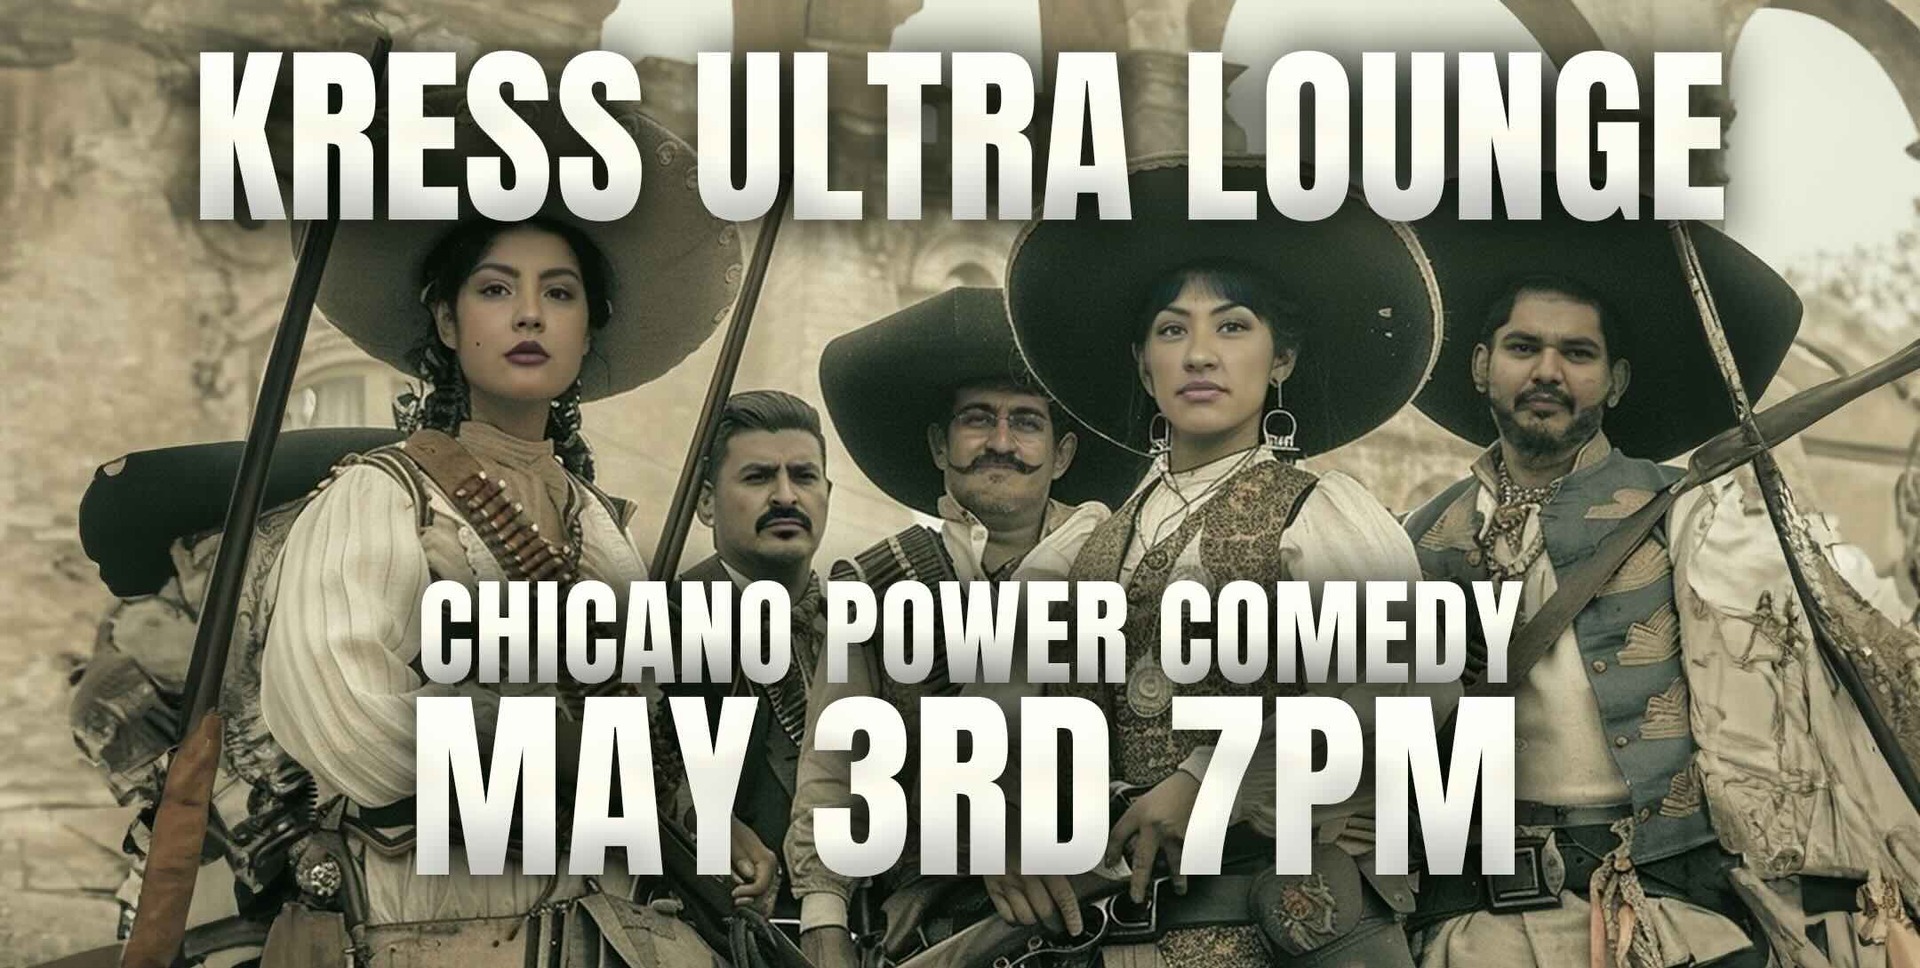 Chicano Power Comedy @ Kress Ultra Lounge, Yuma, Arizona, United States